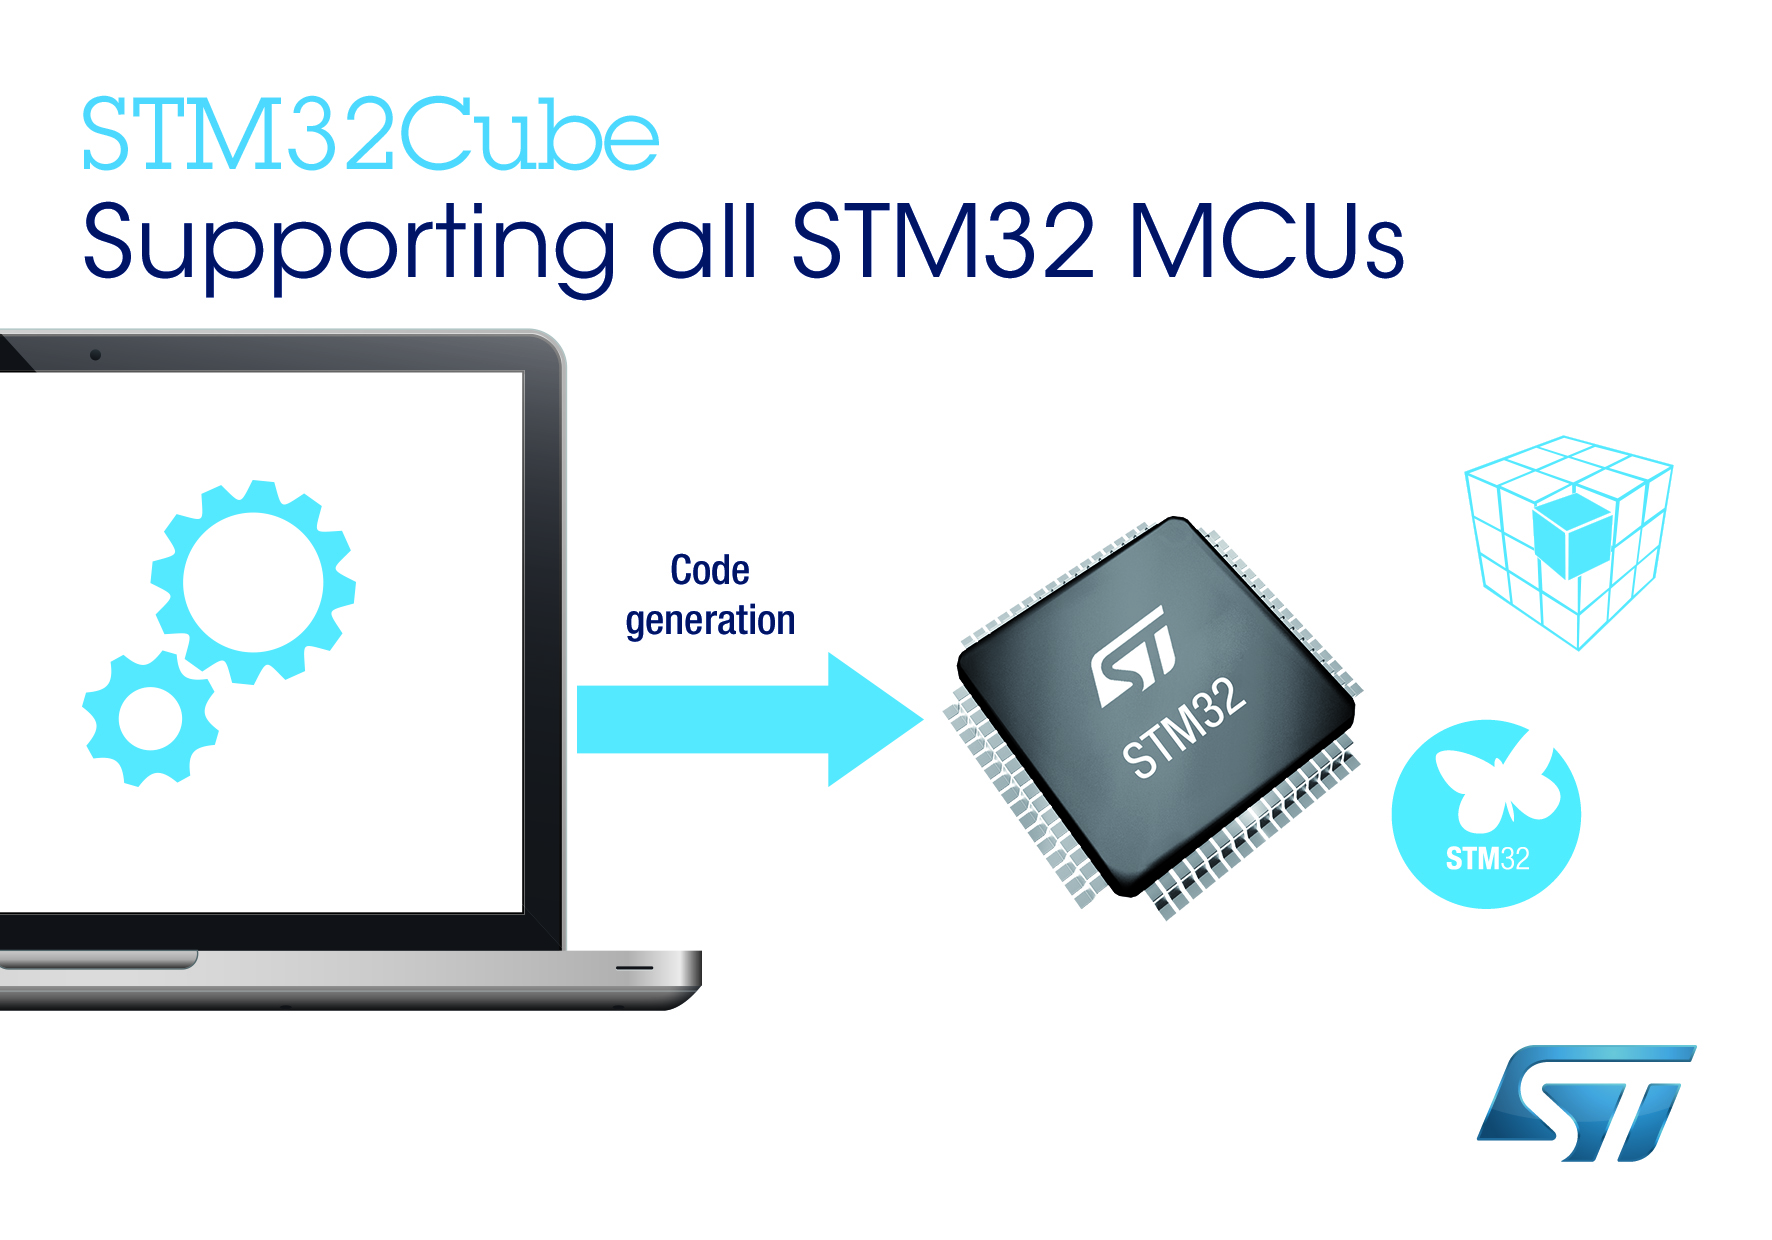 意法半导体(ST)灵活便捷的STMCube™软件平台帮助设计人员快速上手，支持所有量产STM32微控制器